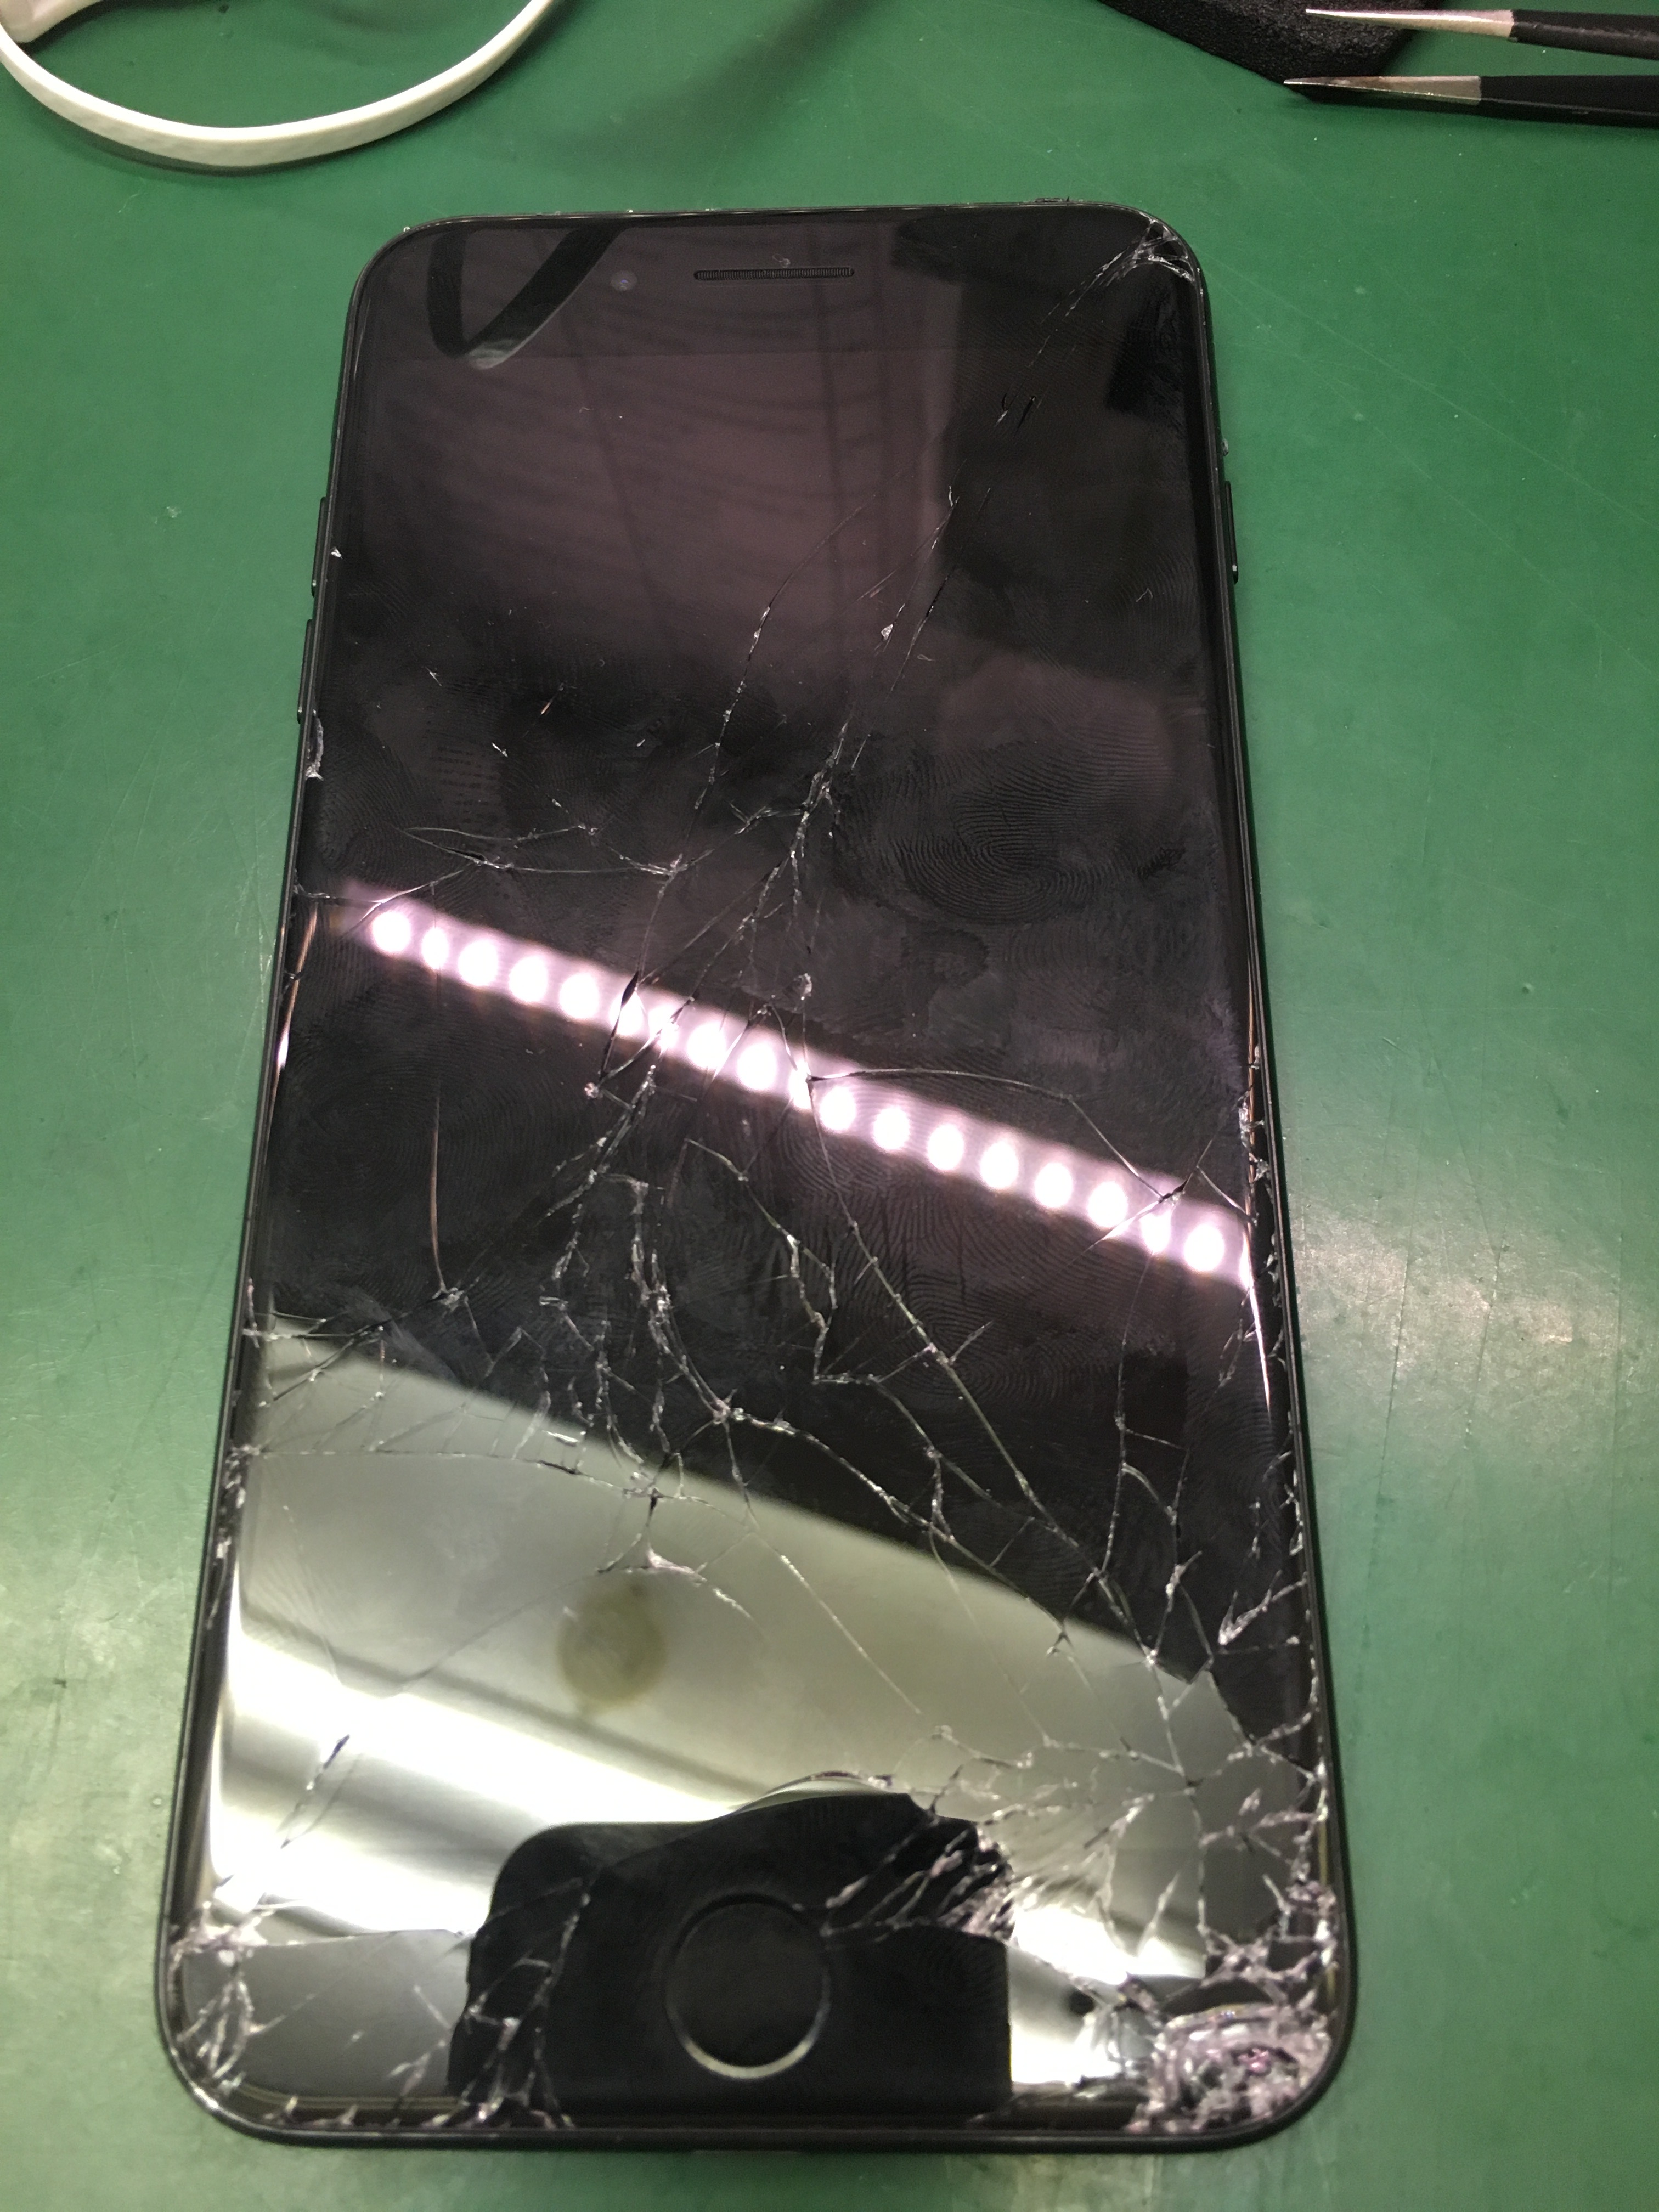 Iphone あいふぉん 7plus画面割れ ガラス割れ 液晶割れ修理 最安 千葉 茨城 埼玉 水戸